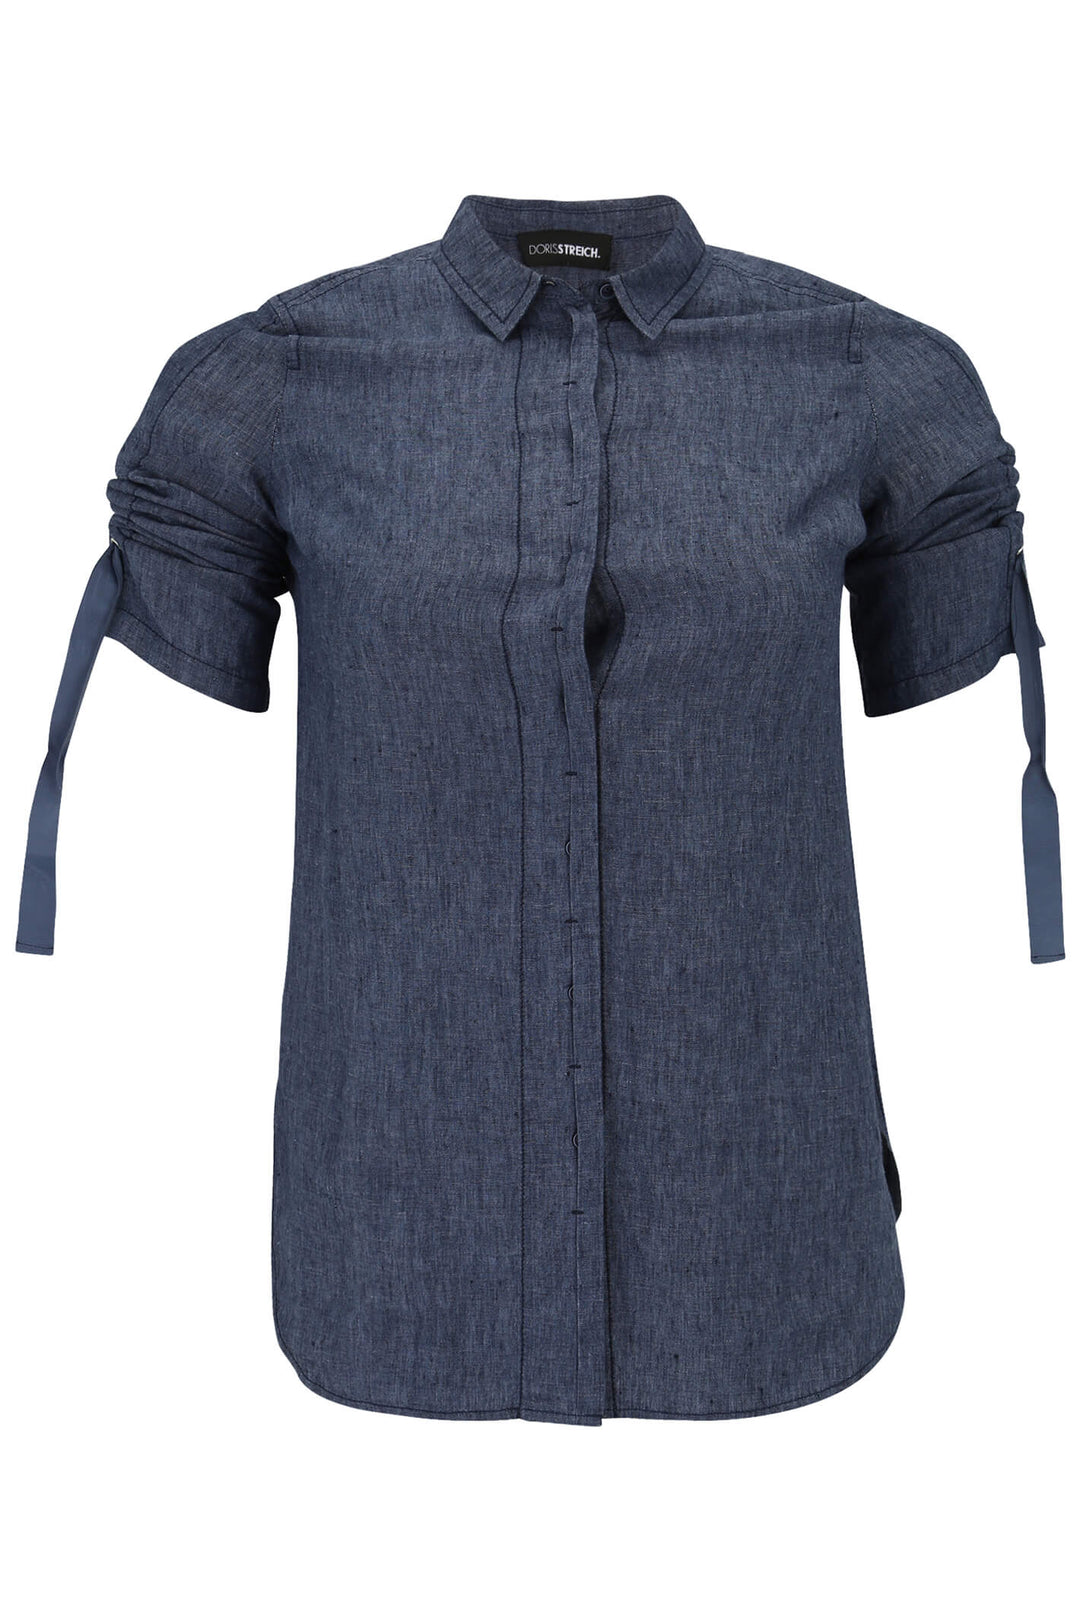 Doris Streich 254 135 Denim Blue Gather Sleeve Shirt - Shirley Allum Boutique